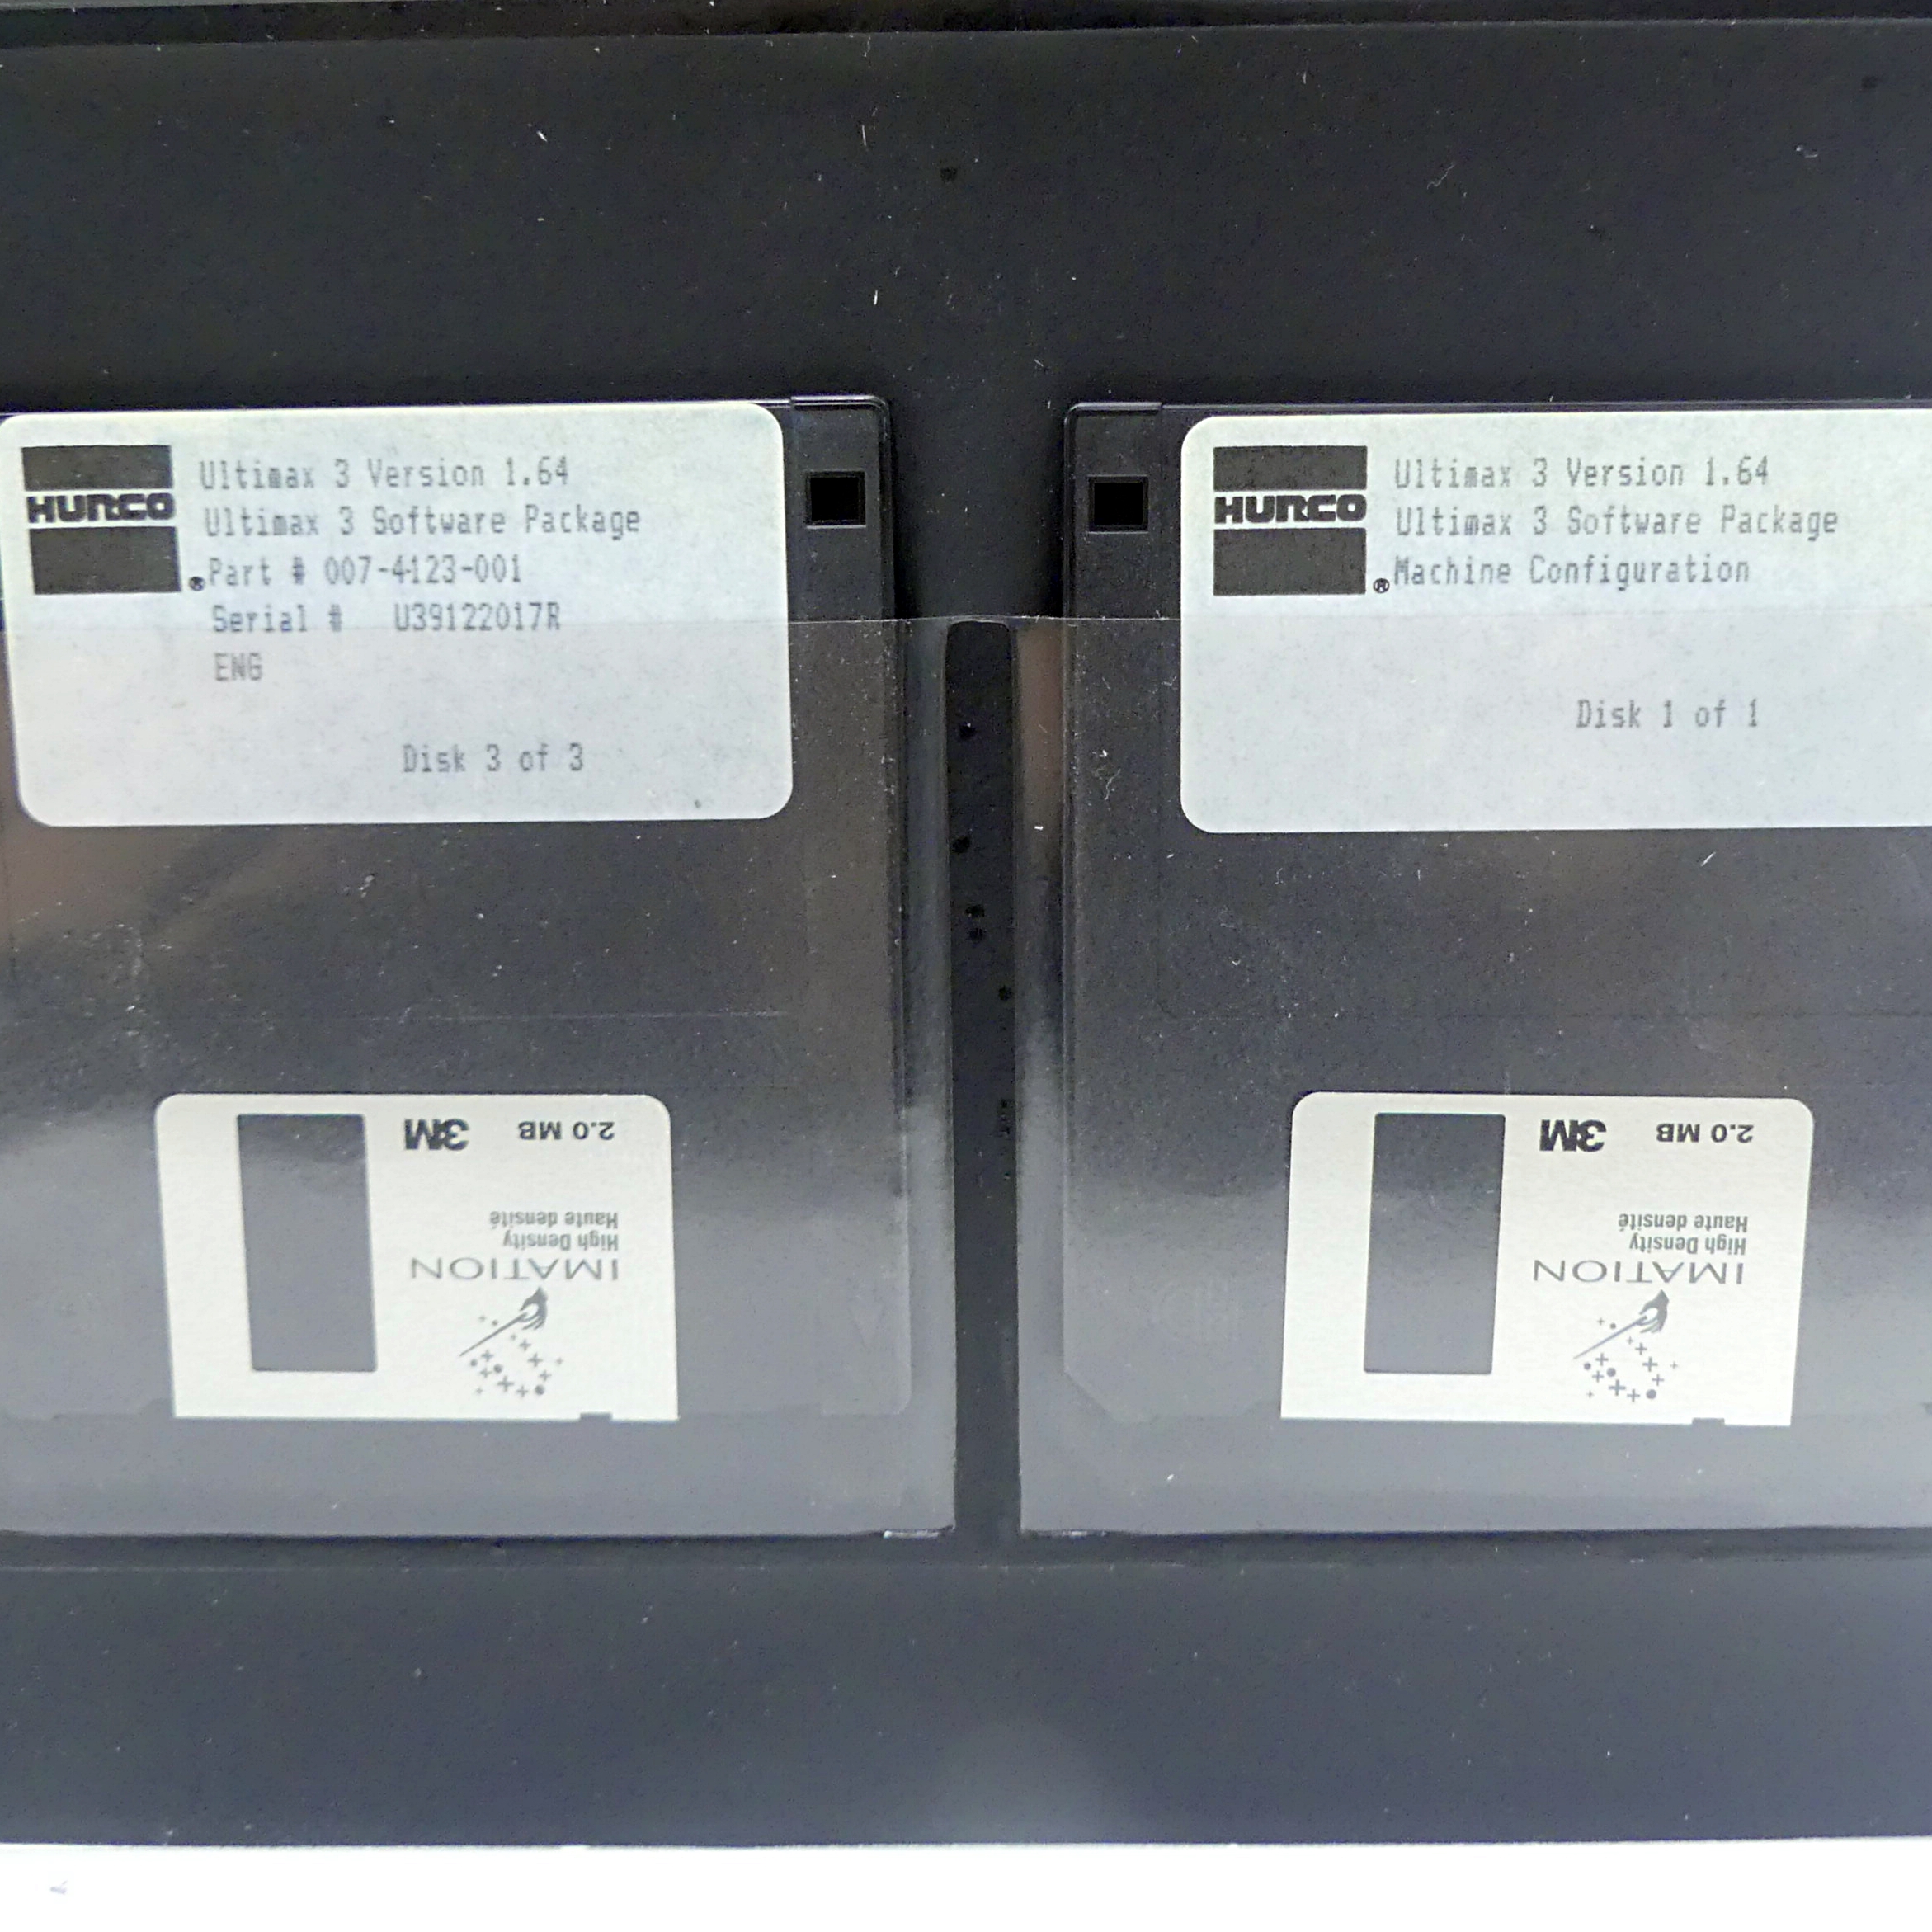 Teac Diskettenlaufwerk mit Hurco Diskettenordner 